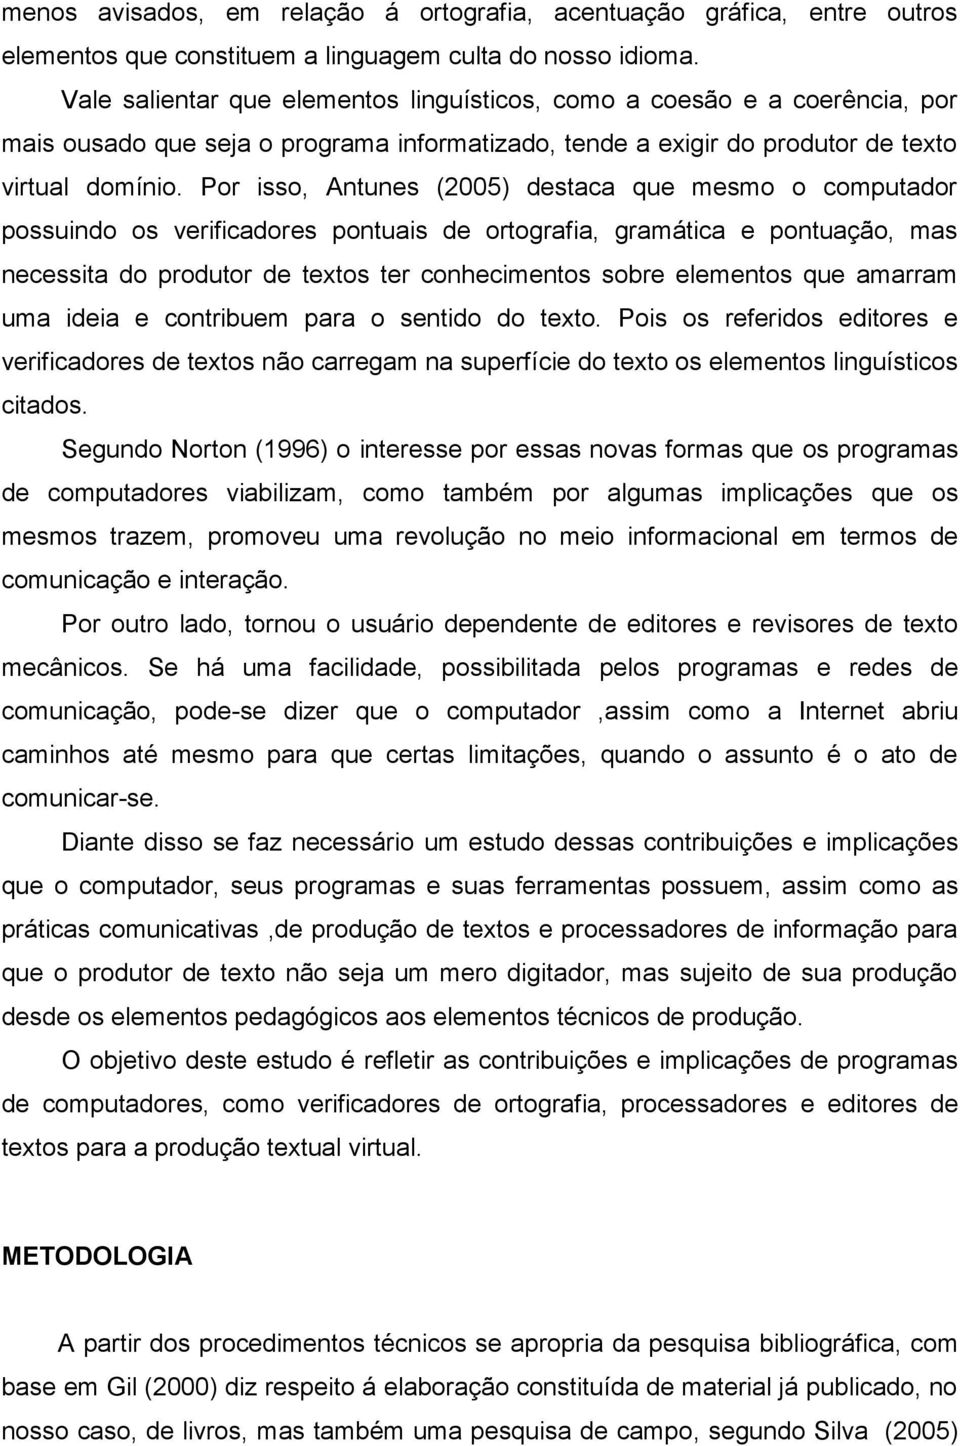 Por isso, Antunes (2005) destaca que mesmo o computador possuindo os verificadores pontuais de ortografia, gramática e pontuação, mas necessita do produtor de textos ter conhecimentos sobre elementos